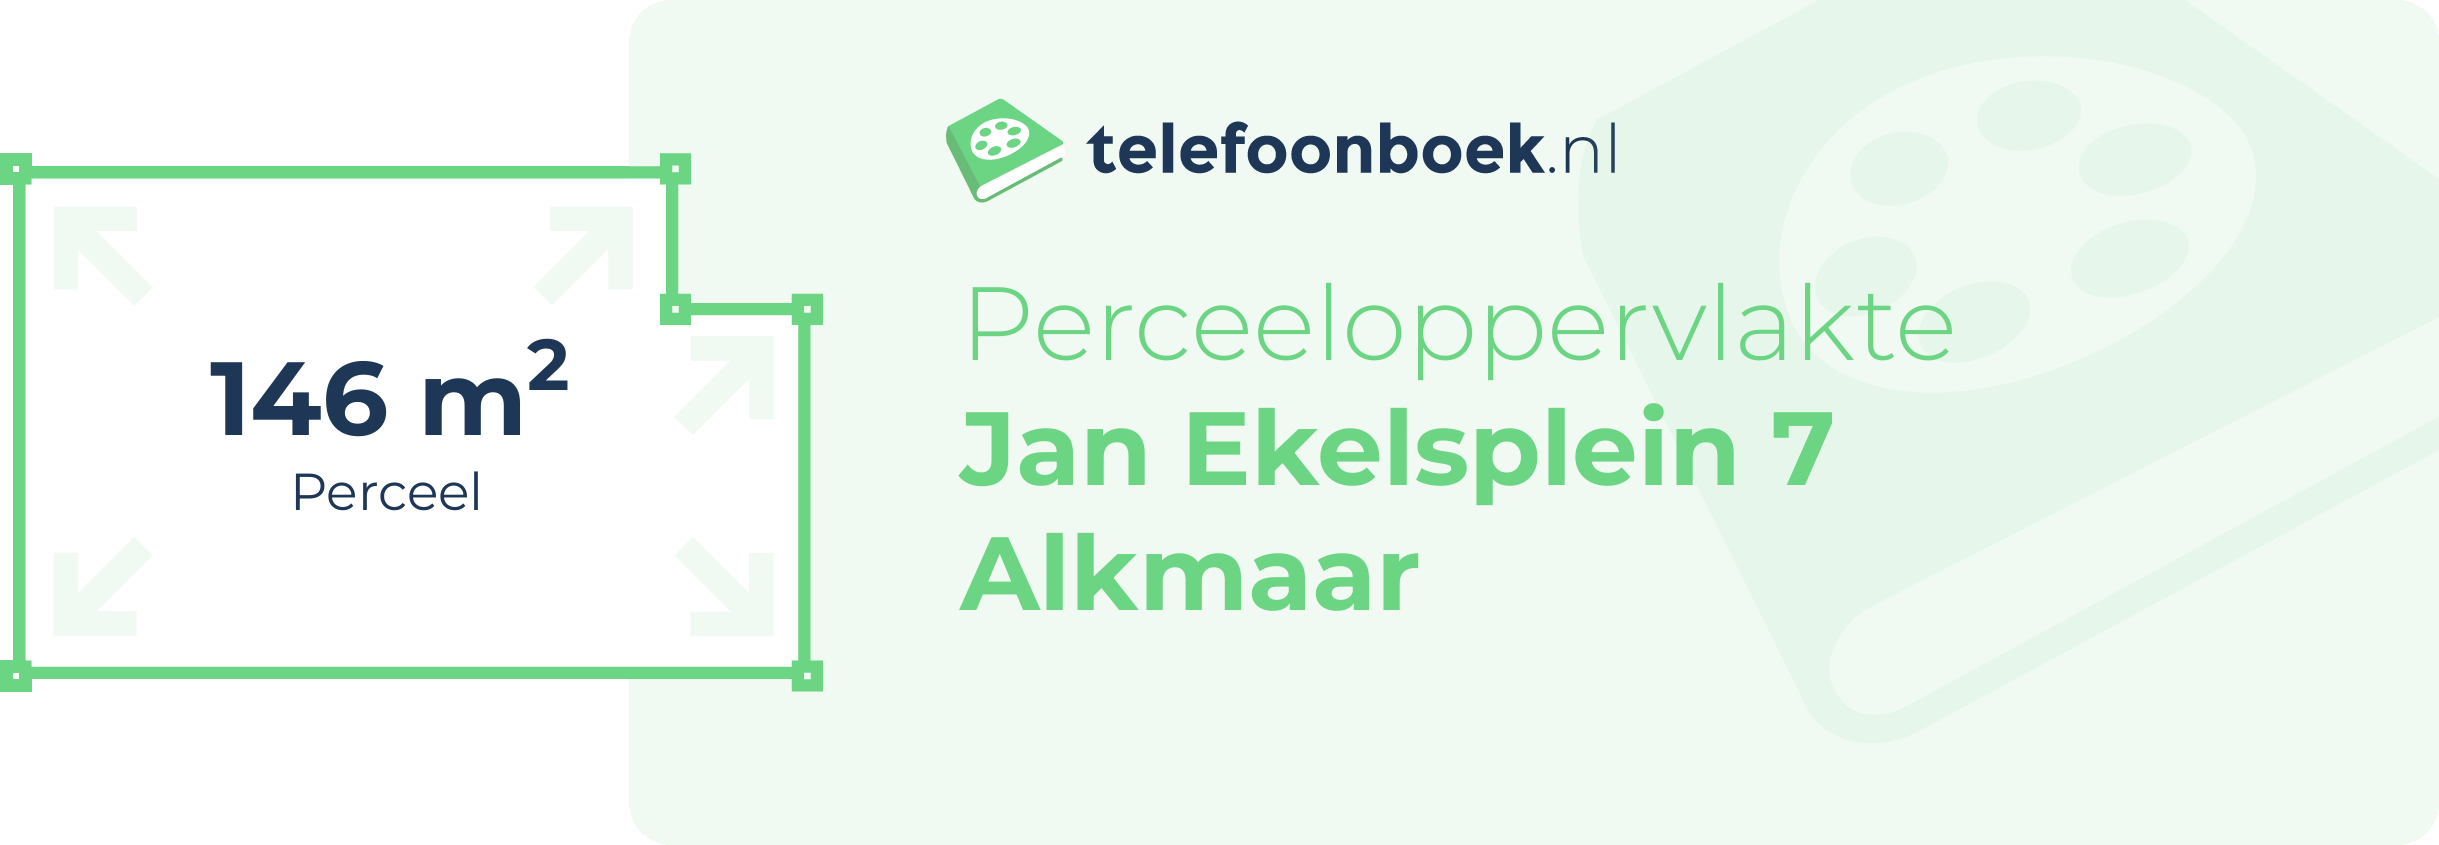 Perceeloppervlakte Jan Ekelsplein 7 Alkmaar